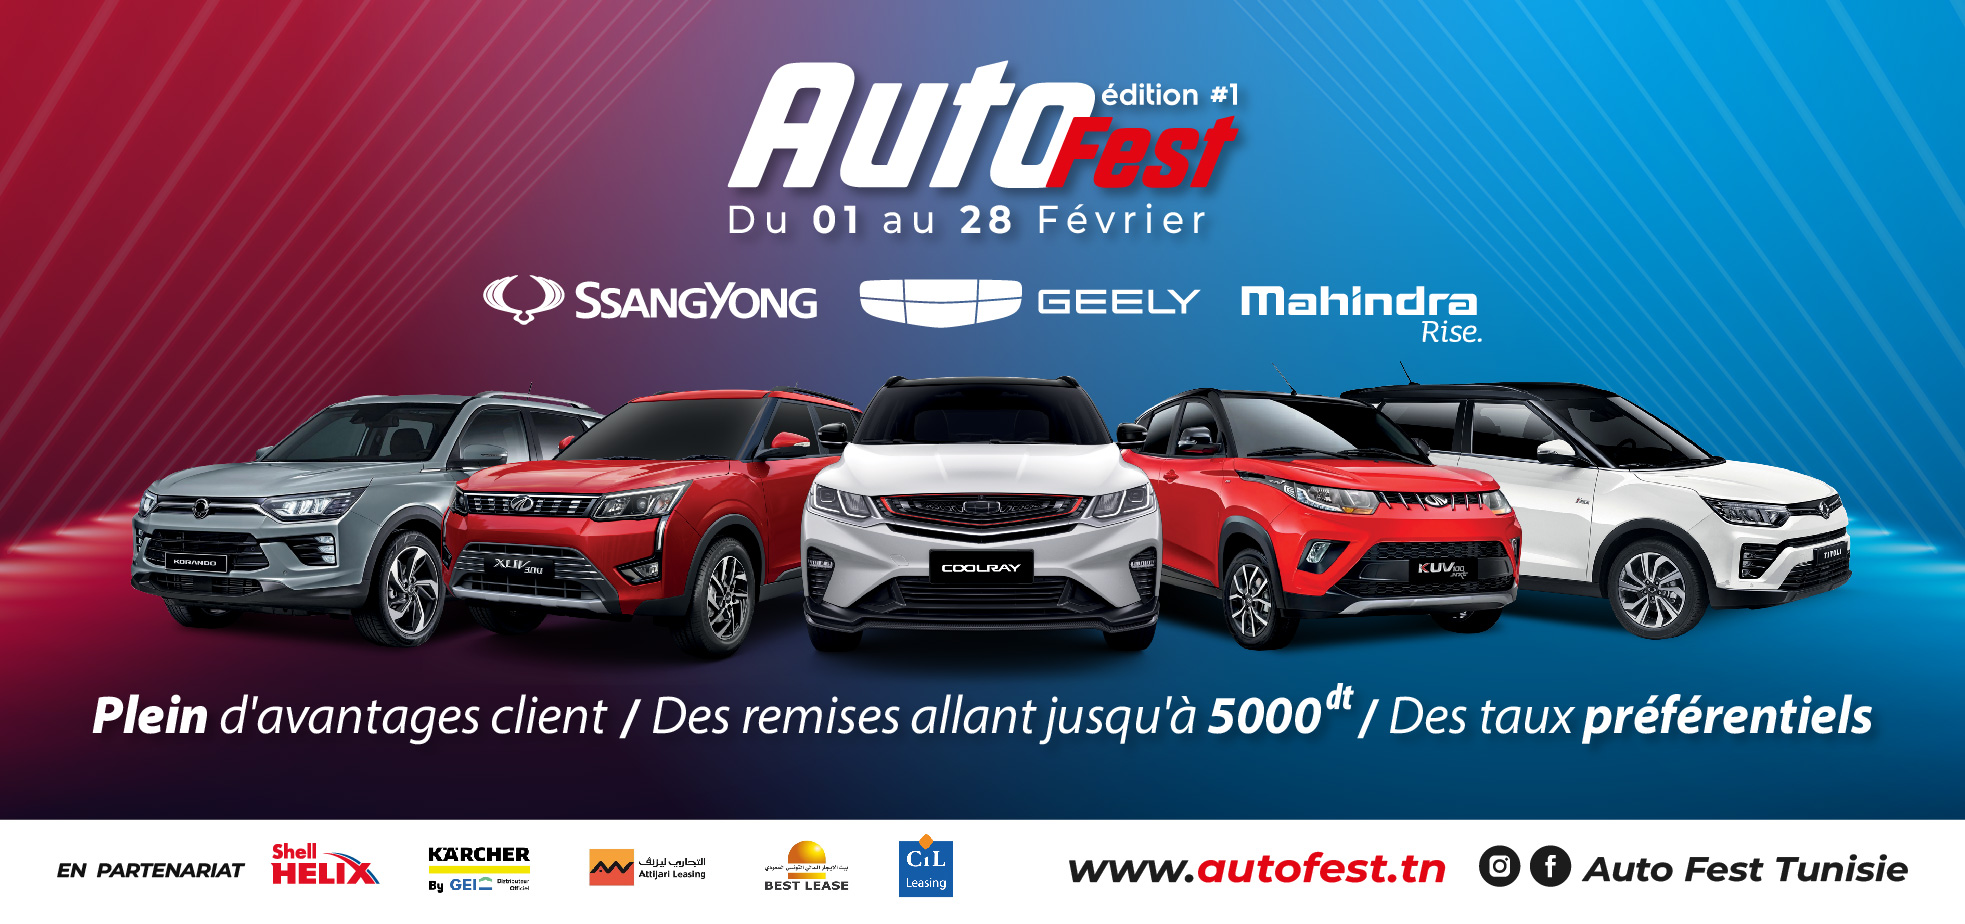 Autofest, le premier festival automobile en Tunisie